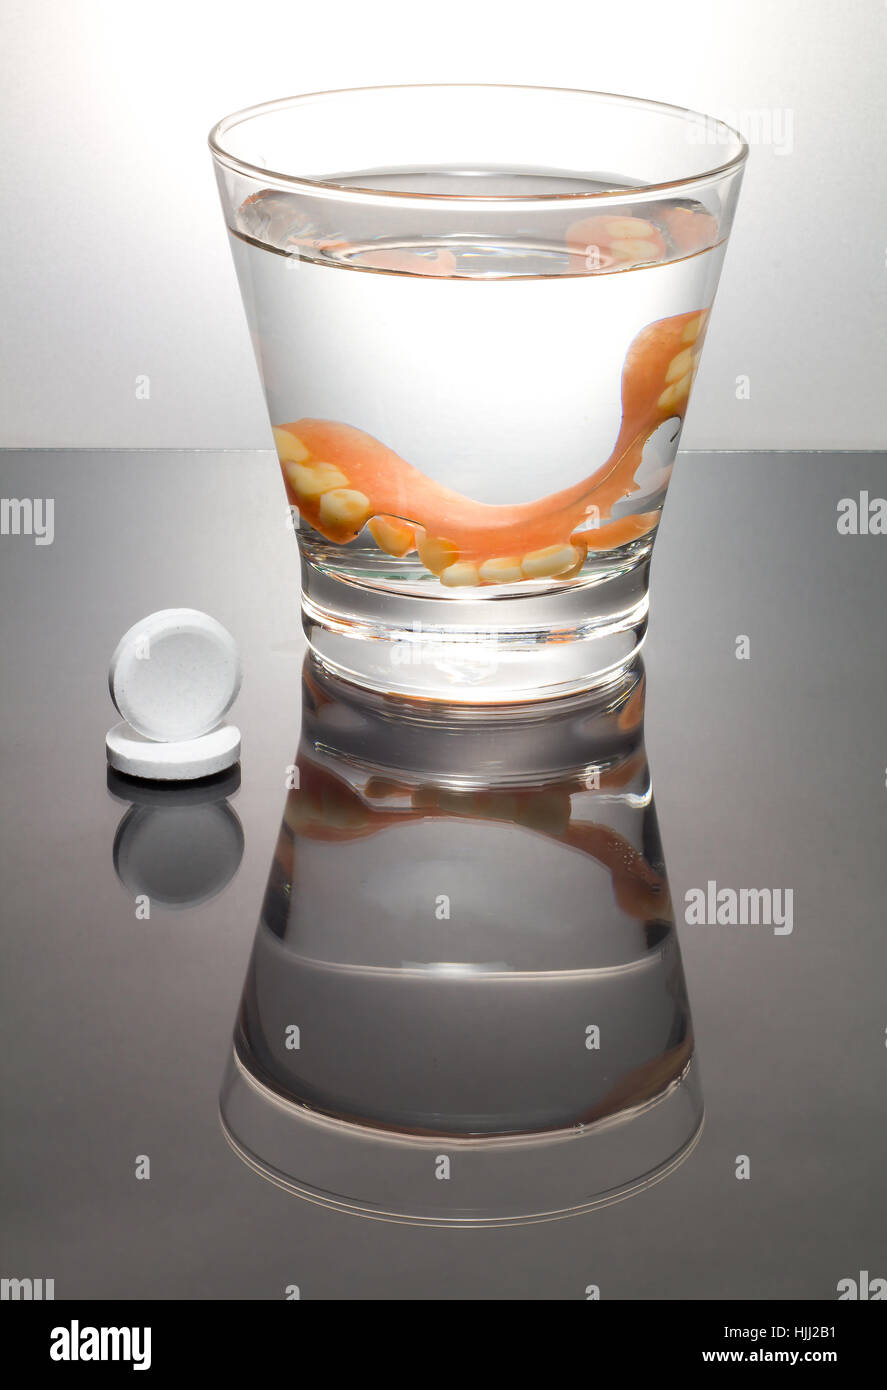 Dentures glass immagini e fotografie stock ad alta risoluzione - Alamy